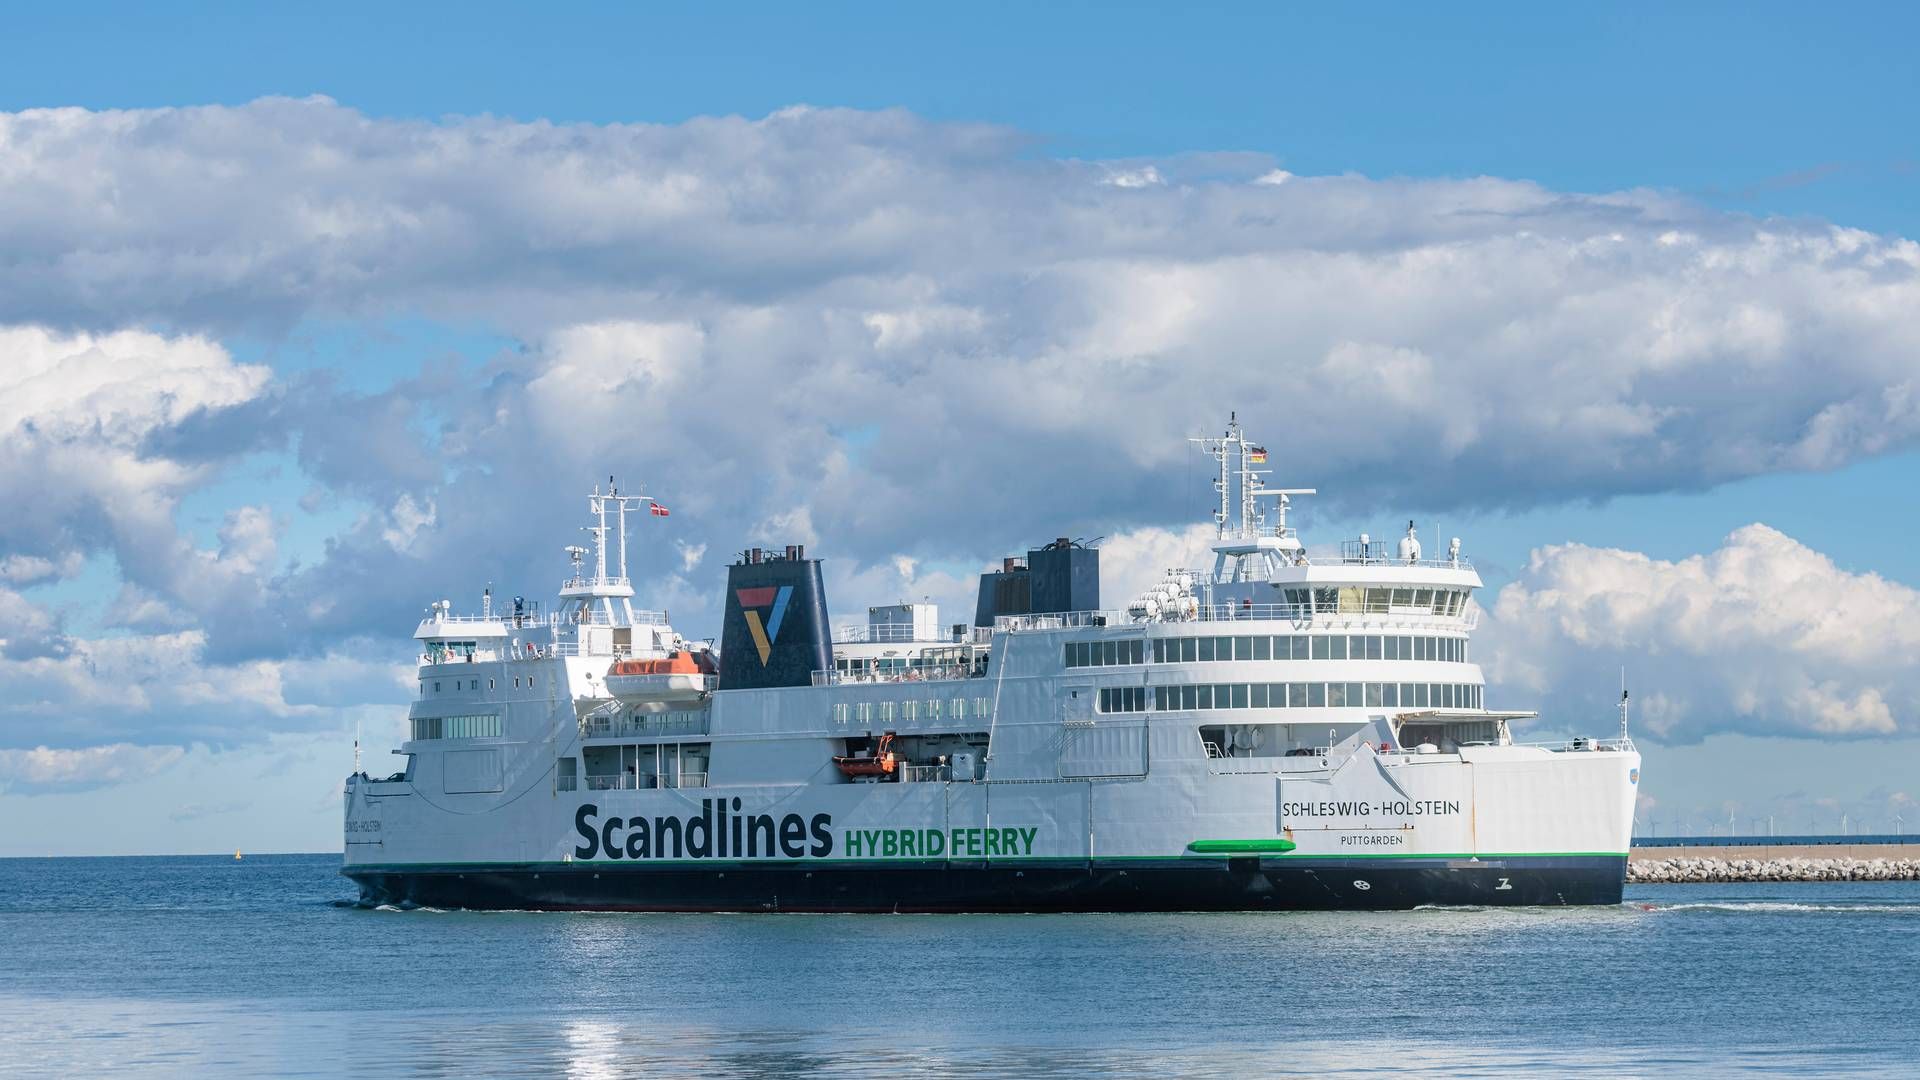 Ved udgangen af årtiet står Scandlines til at blive kraftigt udfordret af tunnelforbindelsen mellem Danmark og Tyskland. Færgeselskabets formand forventer dog, at flere tiltag kan dæmme op for truslen. | Foto: Markus Scholz/AP/Ritzau Scanpix